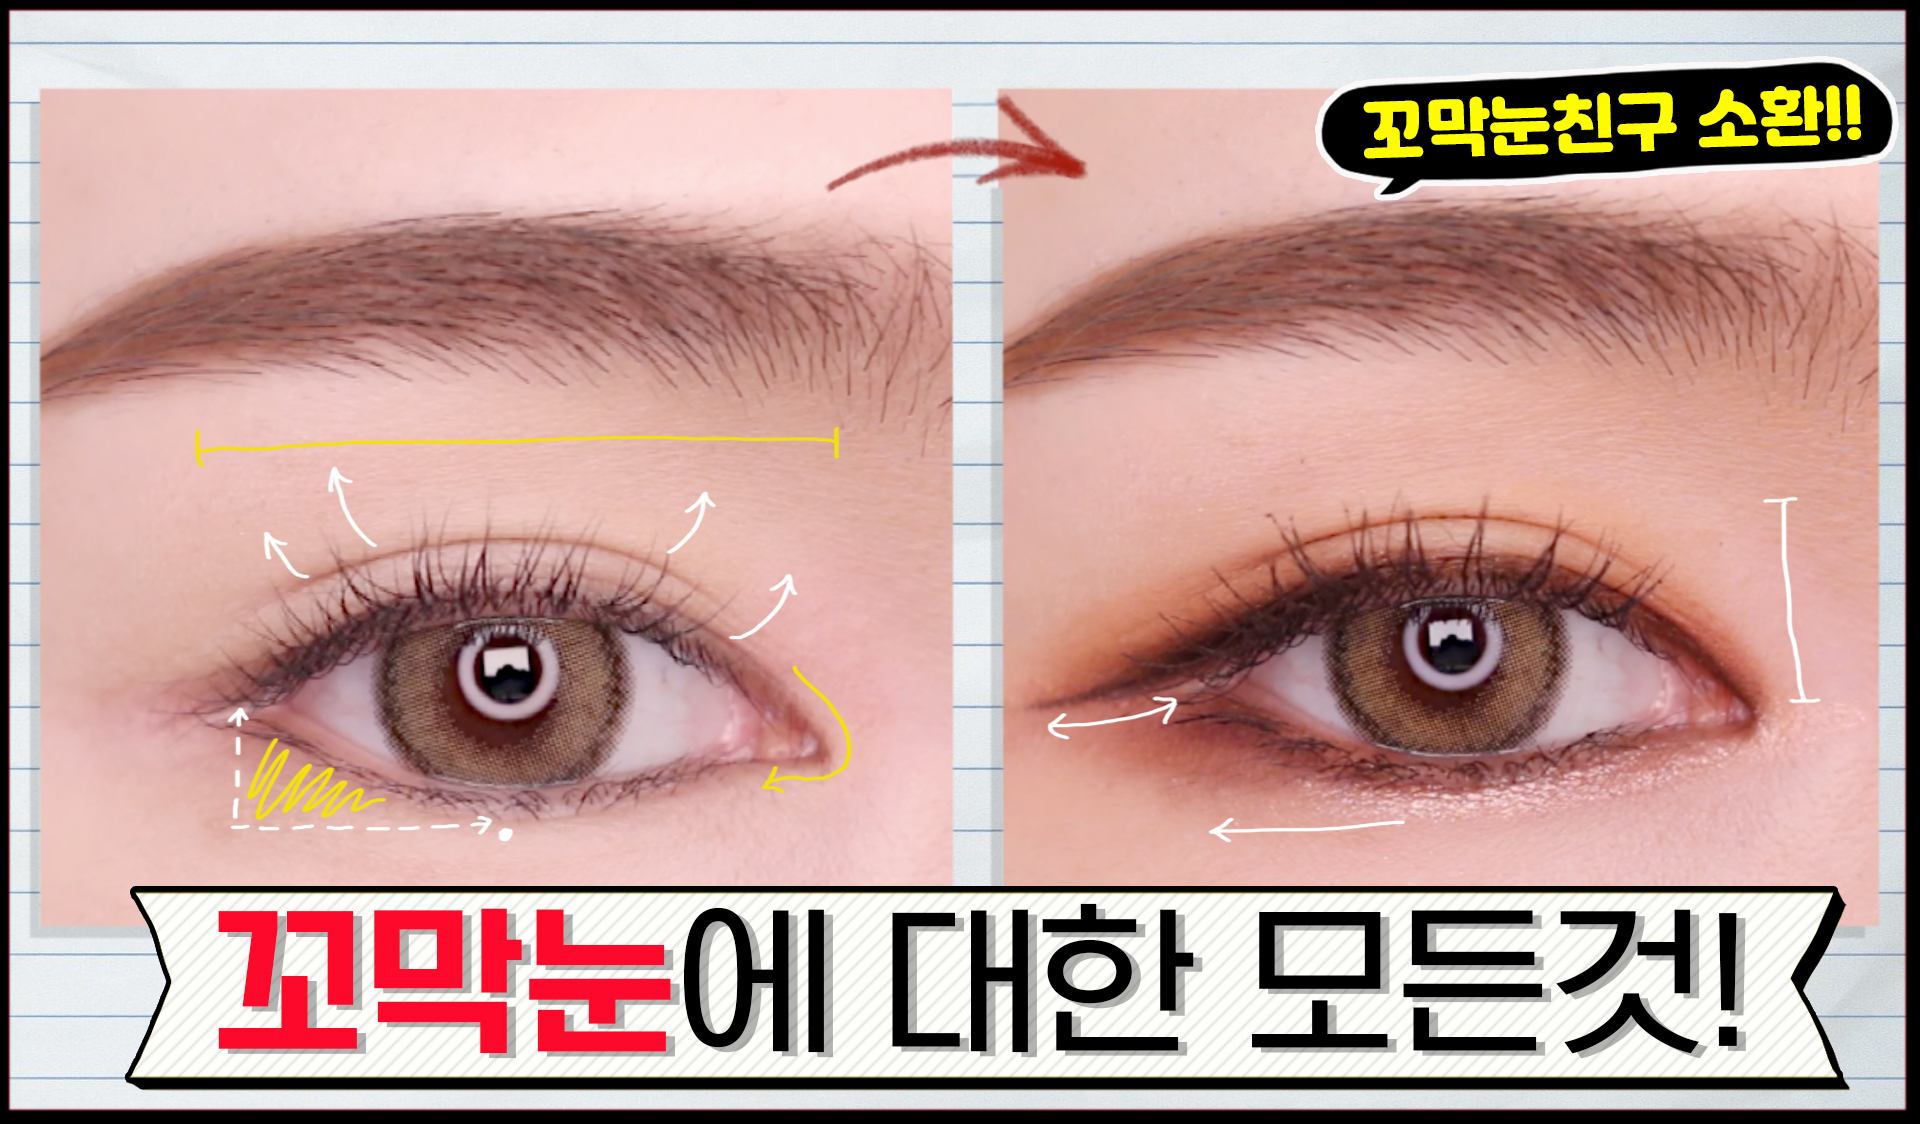 화장초보] 꼬막눈 교정 성형 메이크업 | 아이메이크업 / 눈화장 이쁘게하는법 / eyemakeup